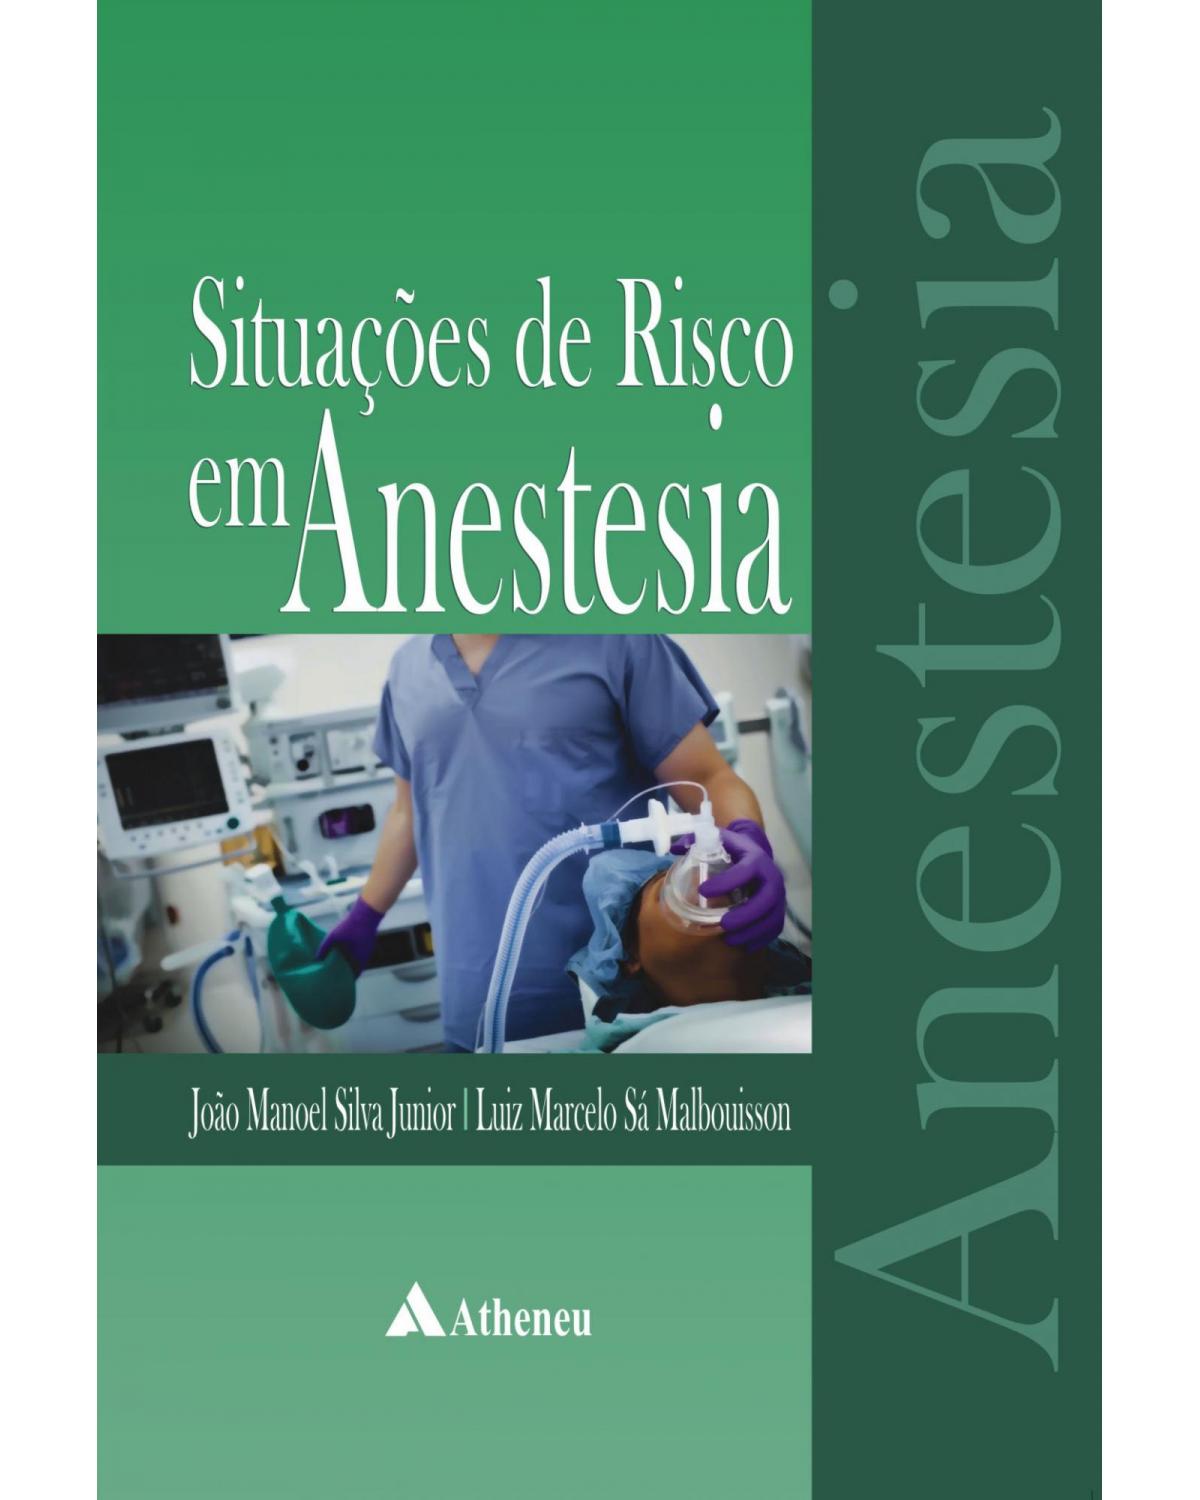 Situações de risco em anestesia - 1ª Edição | 2012